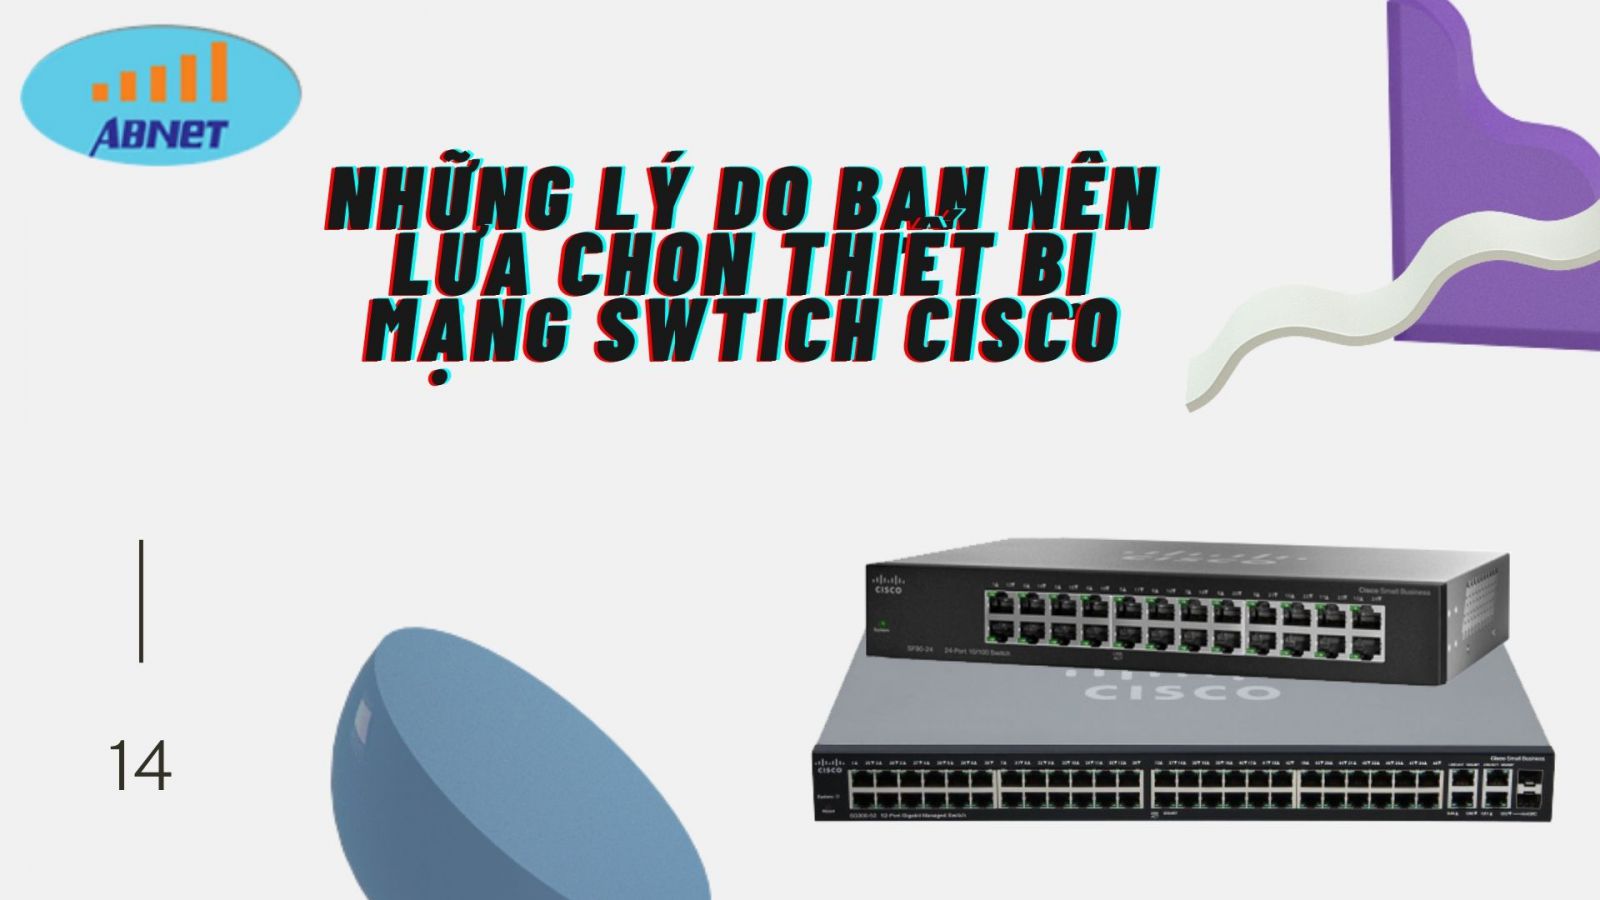 Những lý do bạn nên chọn thiết bị mạng Switch Cisco